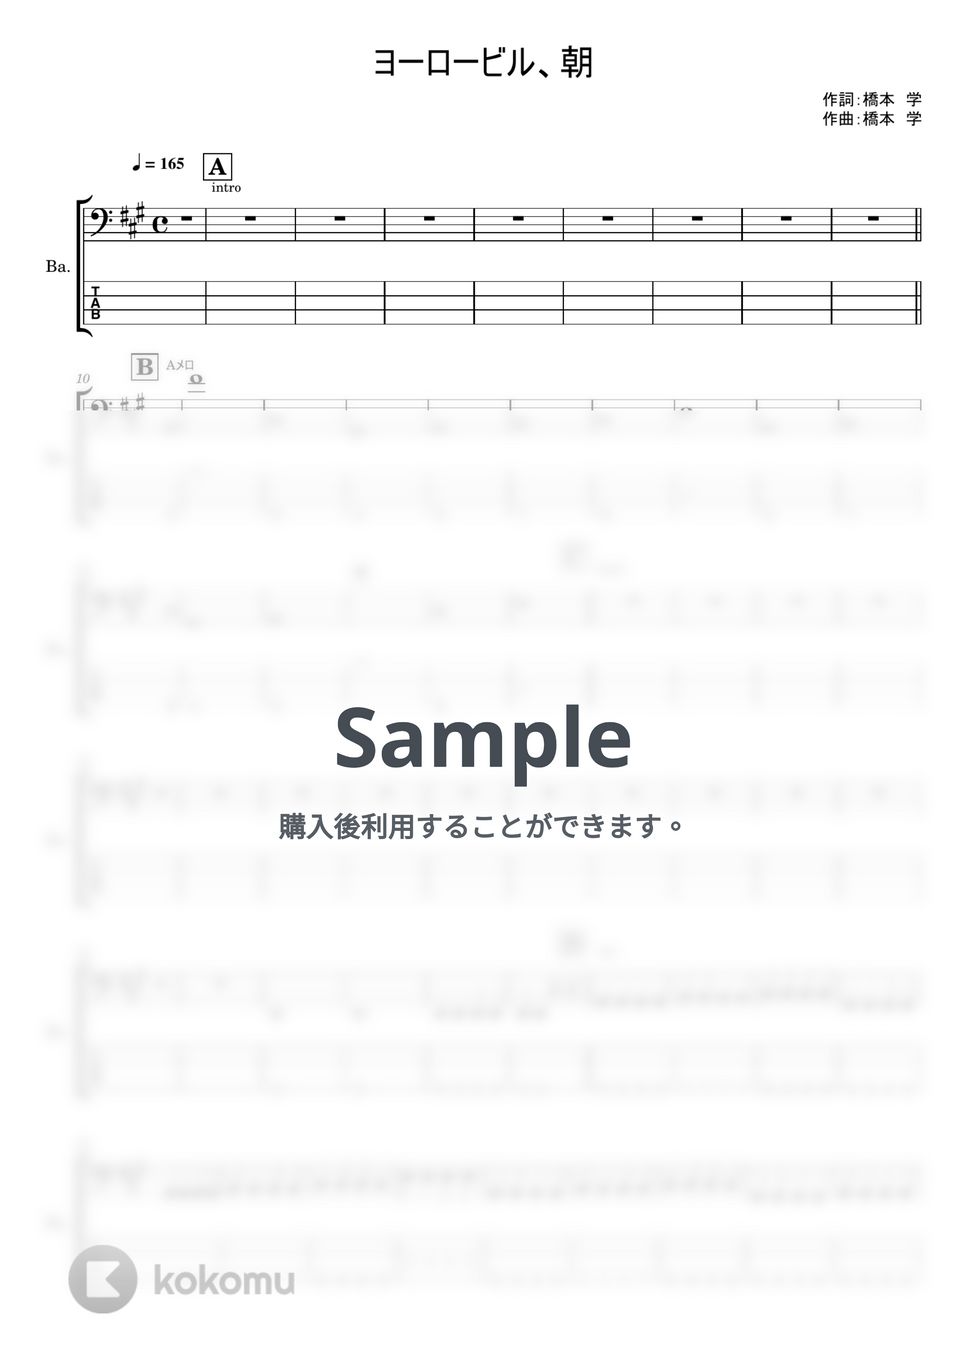 ハルカミライ - ヨーロービル、朝 (ベースTAB譜) by やまさんルーム